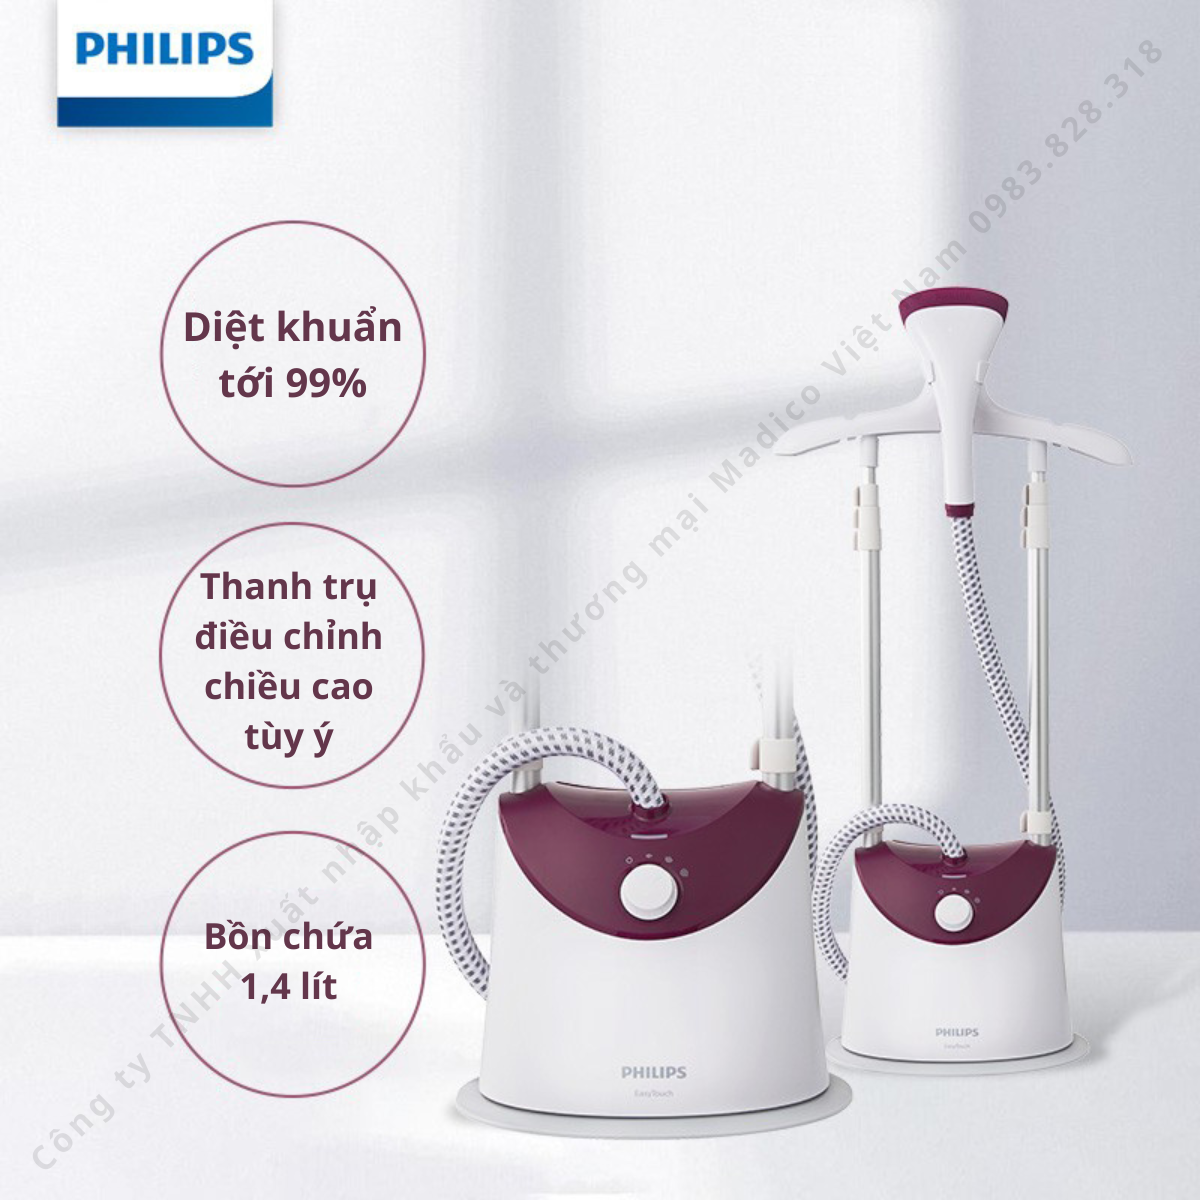 Bàn ủi hơi nước đứng Philips GC486 có móc treo quần áo, công suất 1800W - Bảo hành 2 năm...